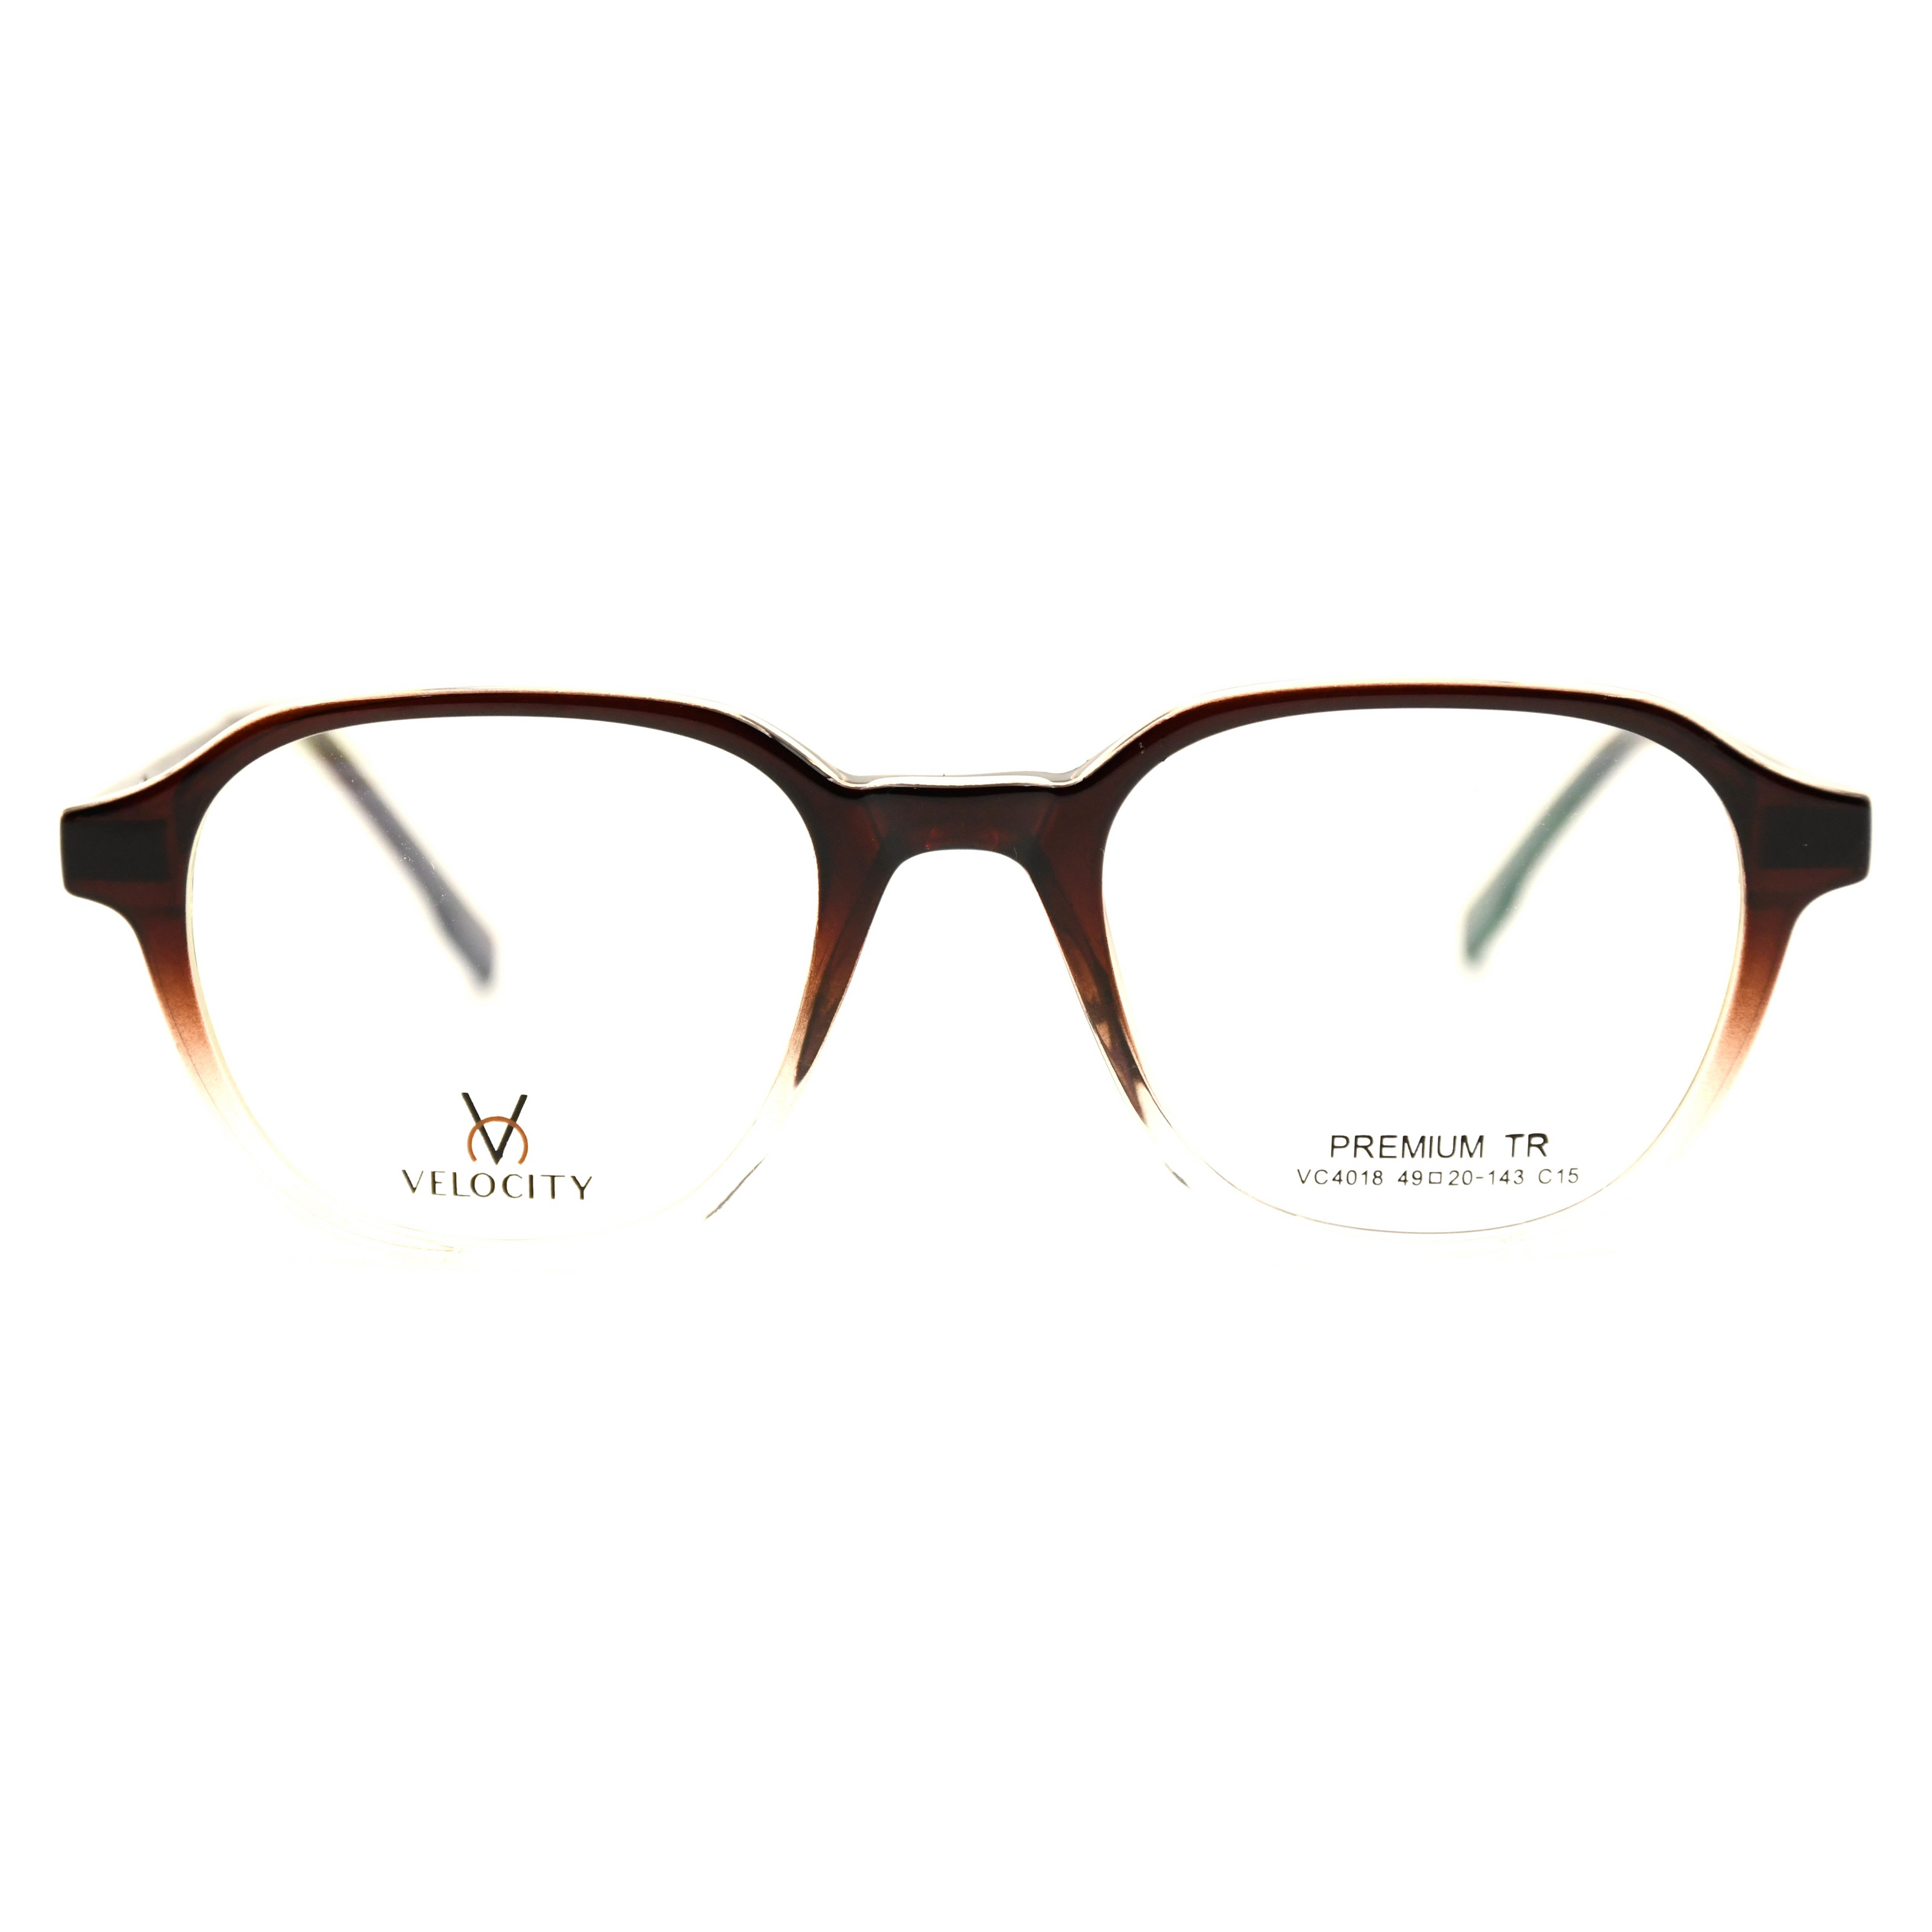 Velocity Rectangle Full Rim Eyeglasses - 4018-C15